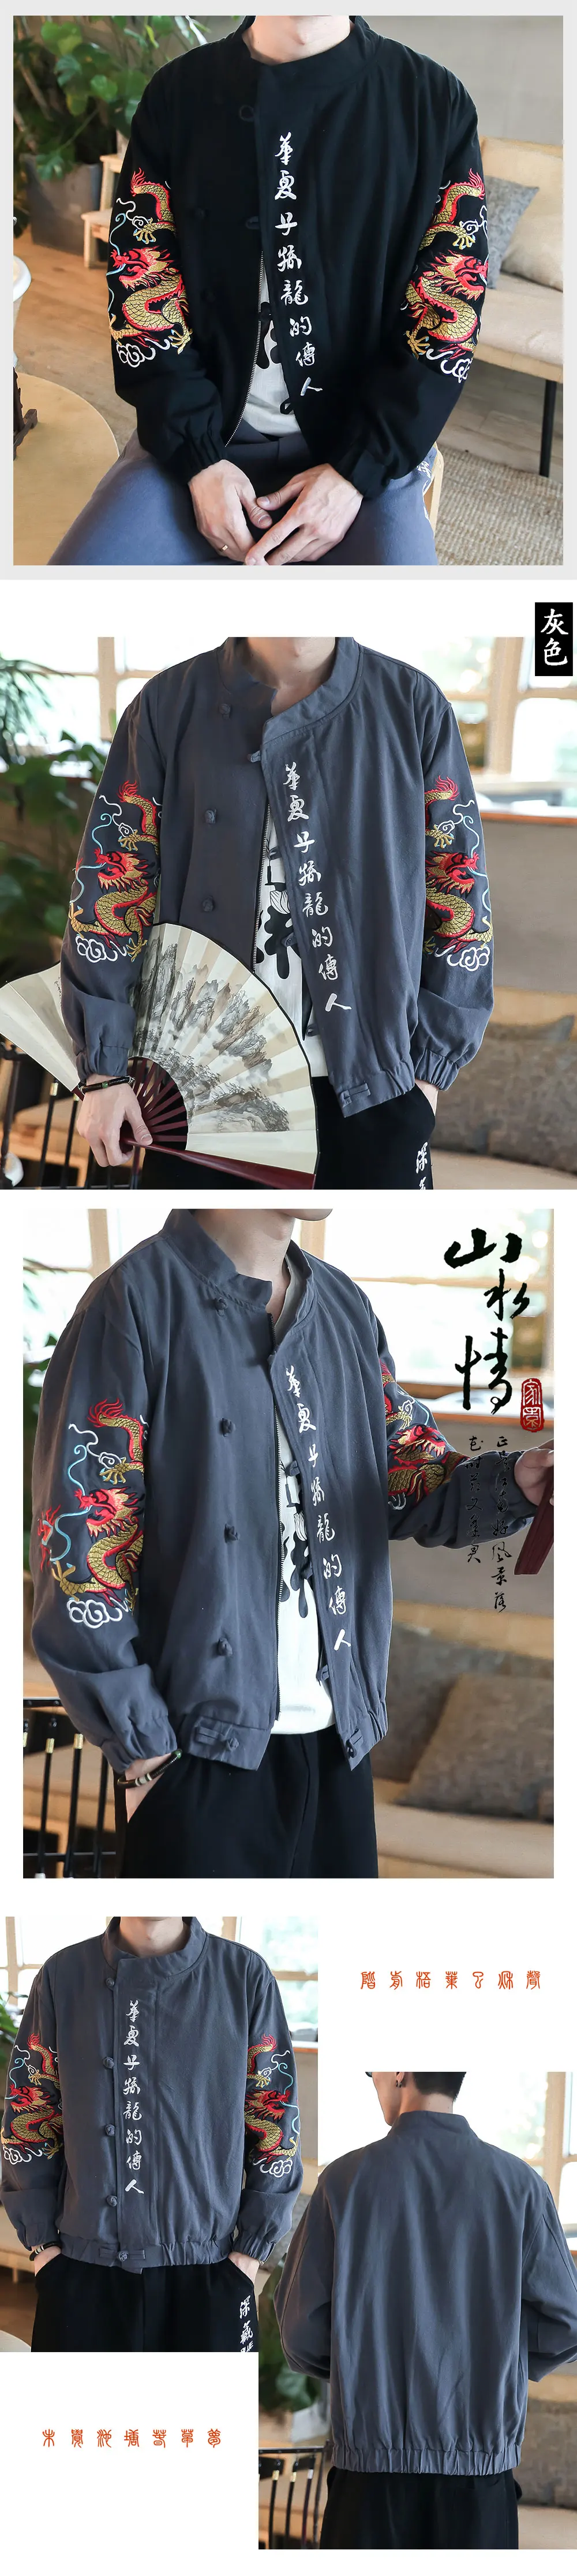 Sinicism Store, мужская куртка-бомбер, китайский стиль, мужская Свободная модная уличная одежда, мужская осенняя куртка с вышивкой, 5XL